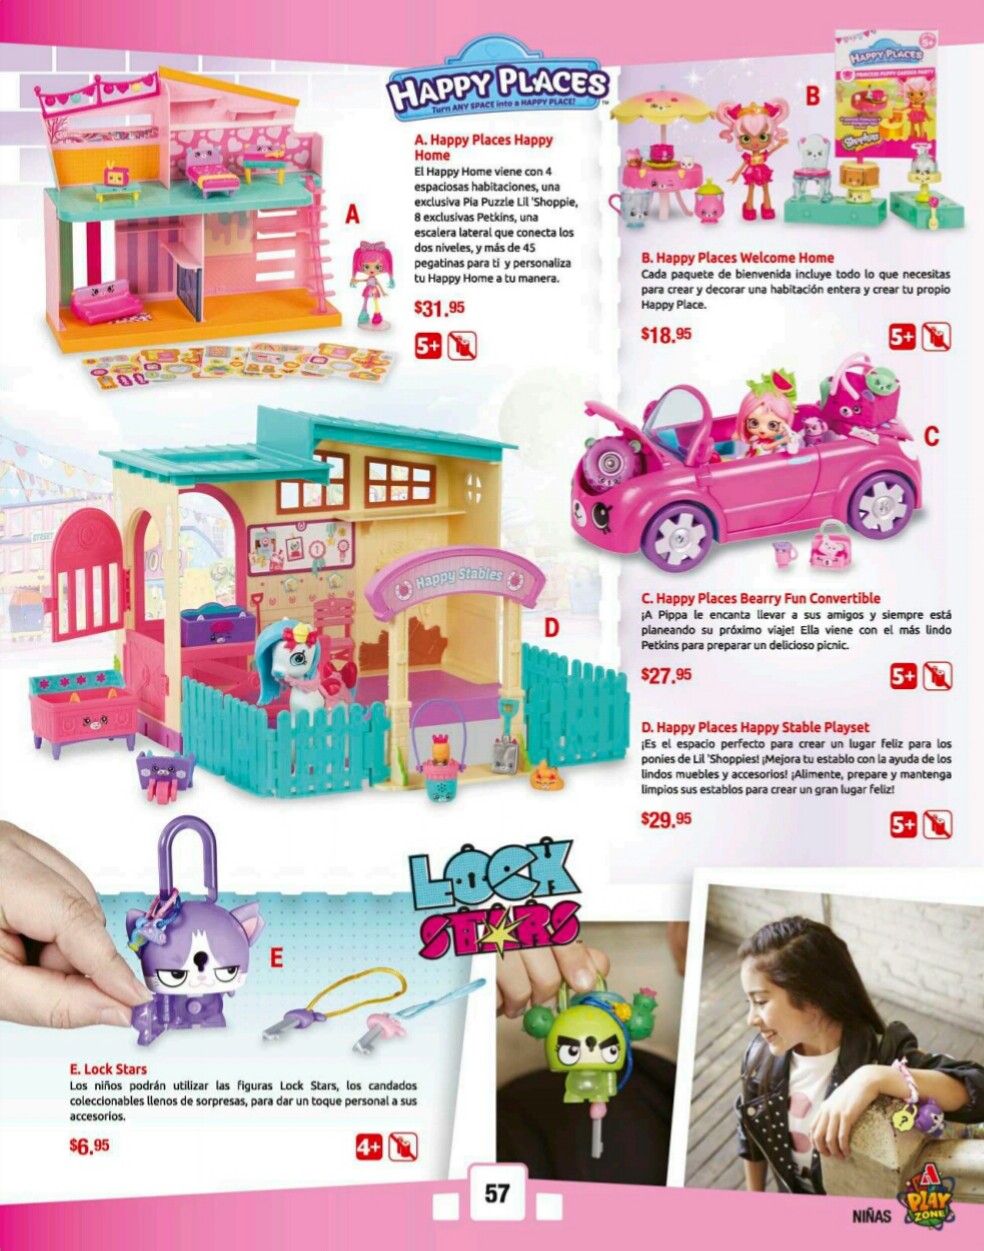 Catalogos juguetes farmacia Arrocha 2018 p57